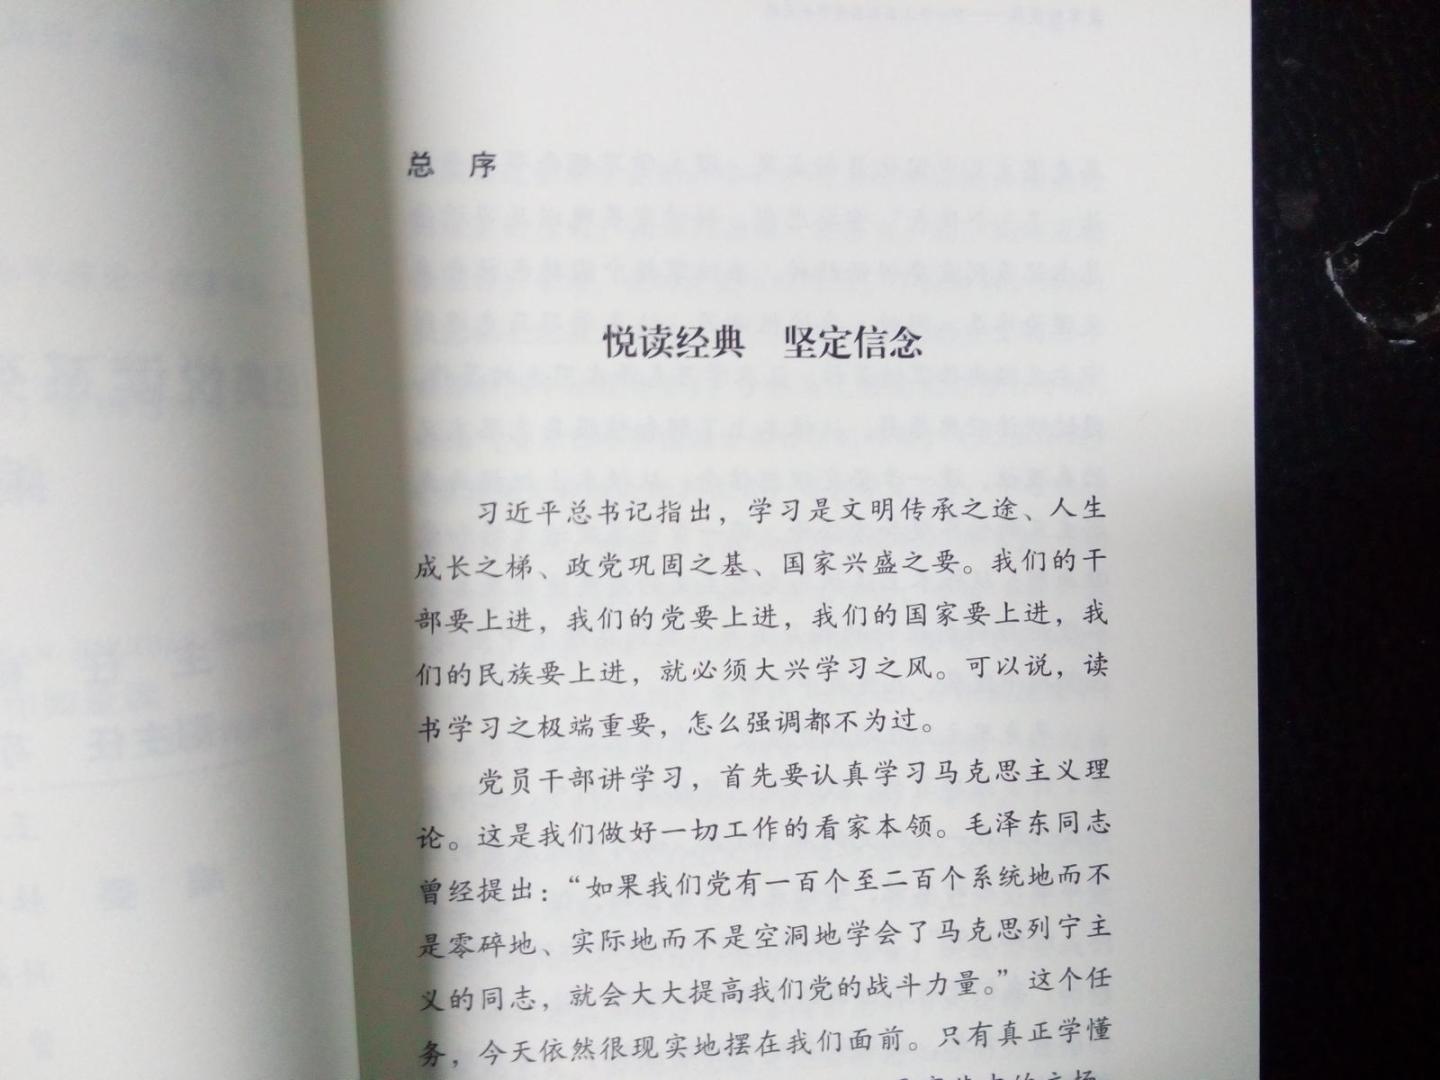 一本帮助大家更好理解邓小平理论的书，浅显易懂，比较不错。